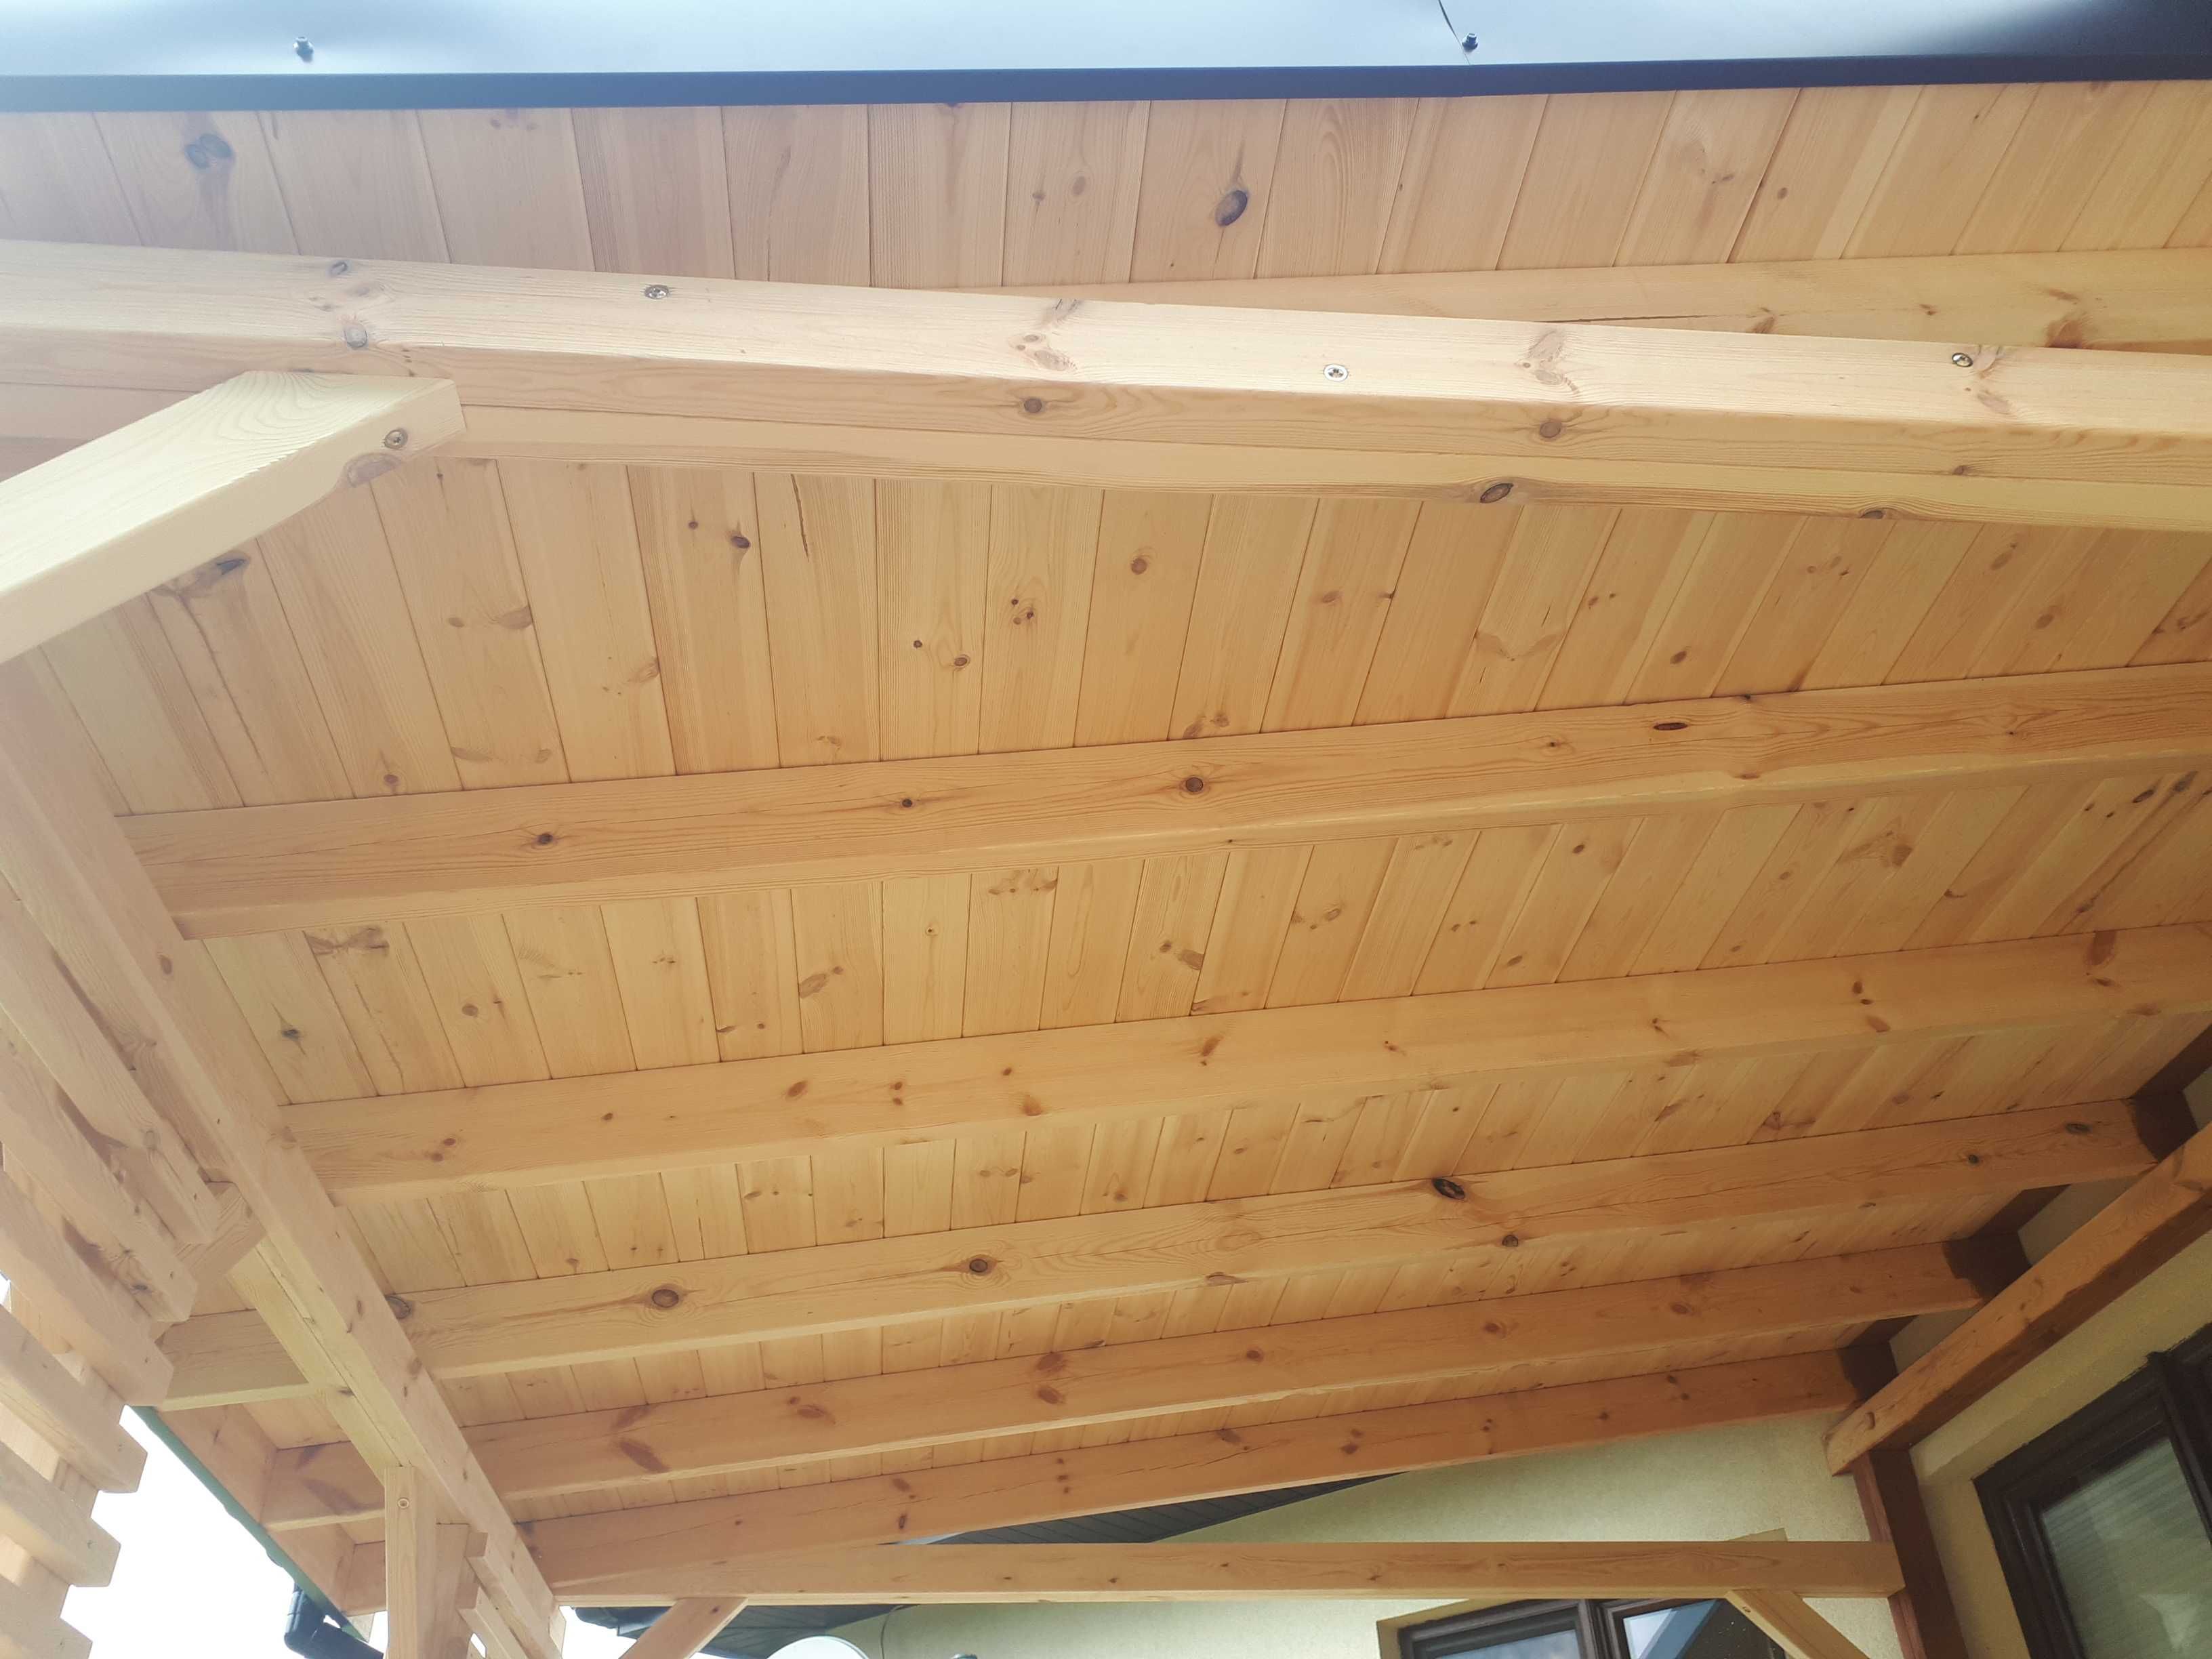 Zadaszenia zabudowa tarasów wiaty drewniane tarasy pergole ażur dachy